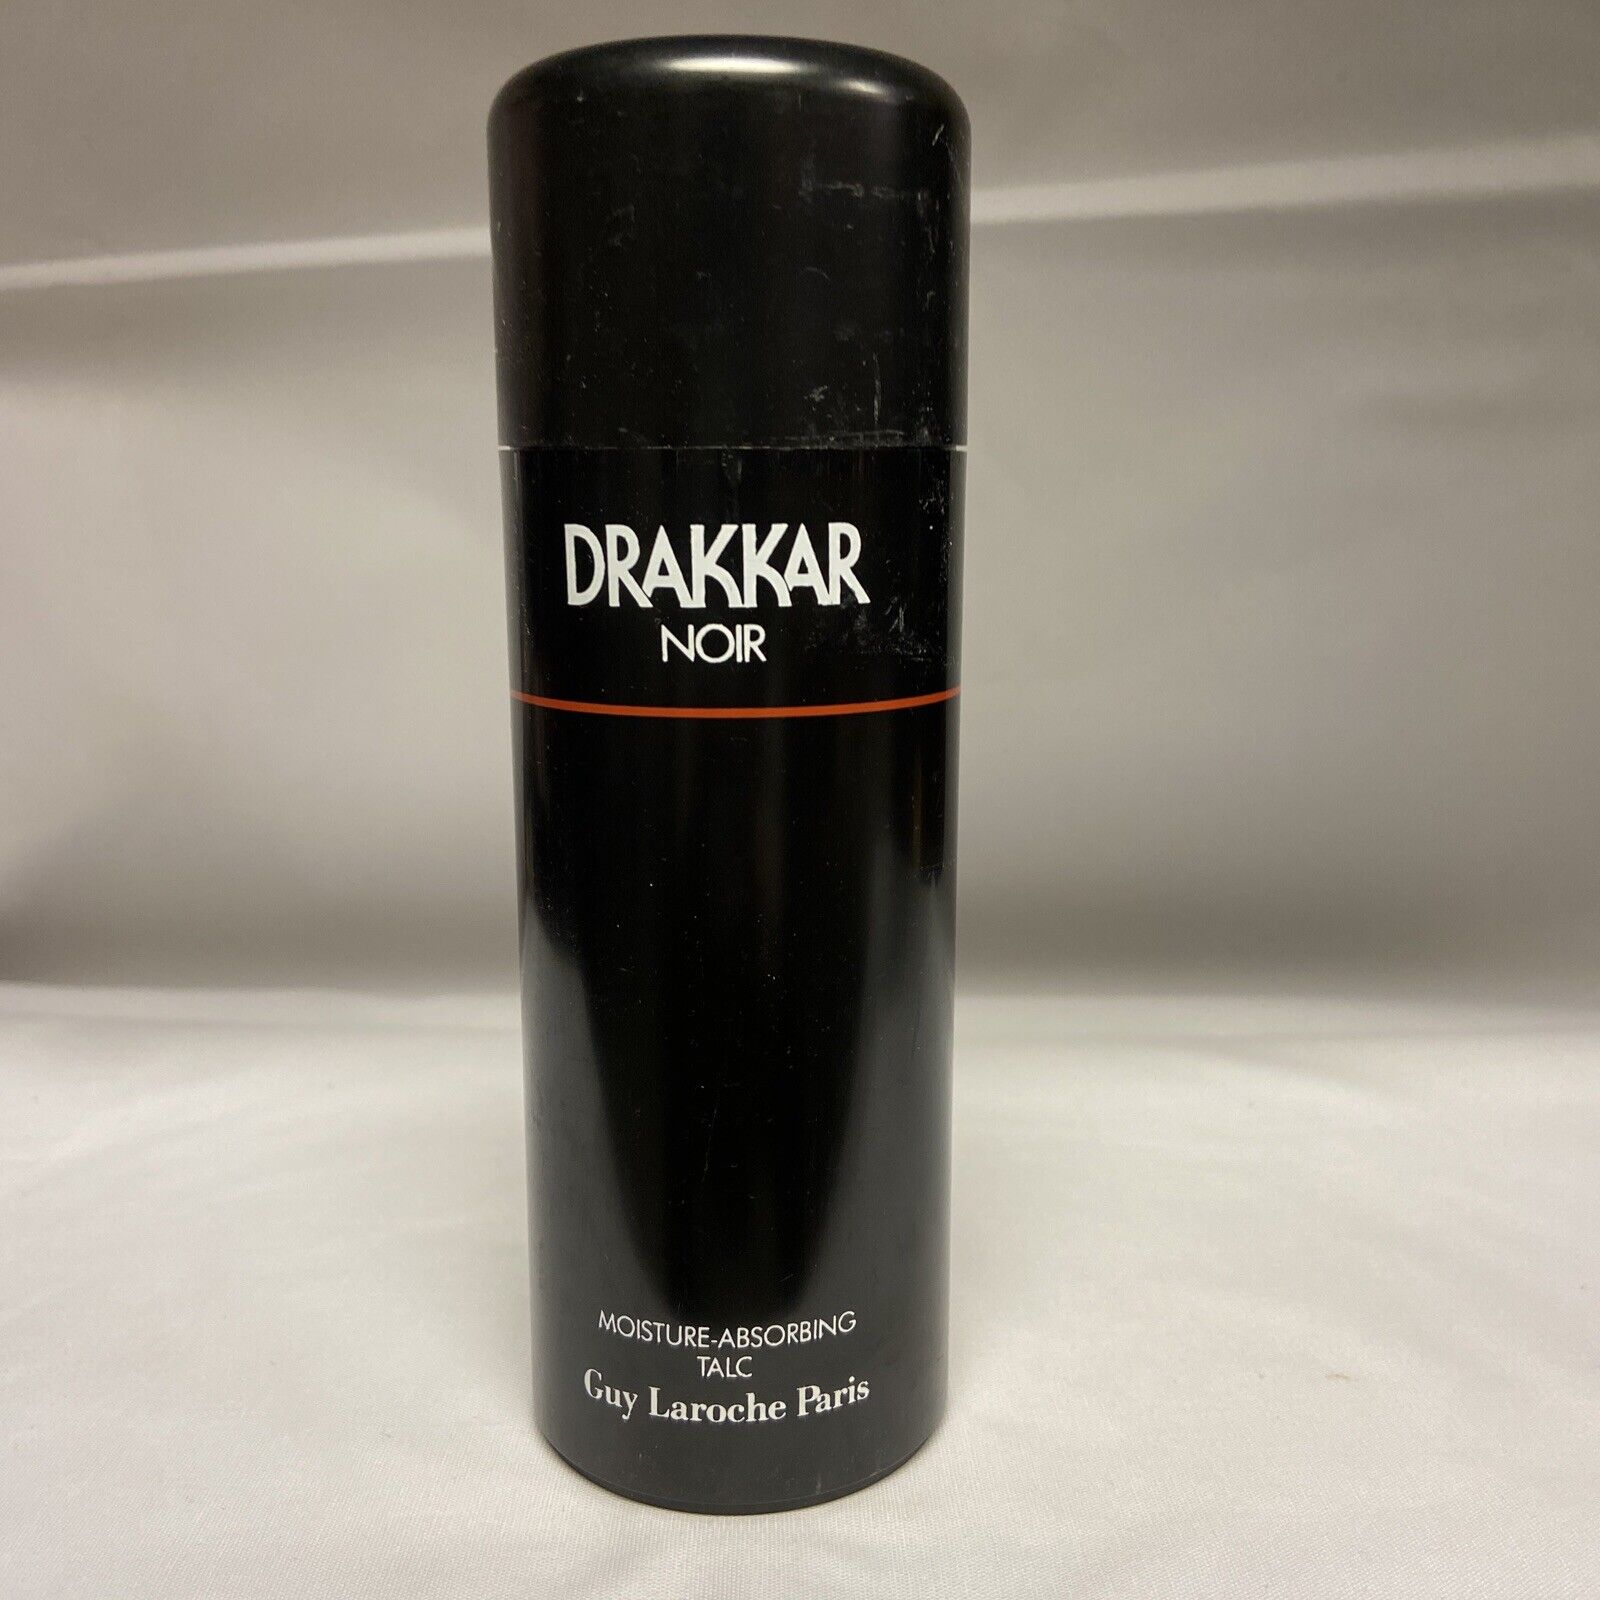 Drakkar Noir moisture Absorbing Talc by Guy Laroche for Men 3.75 oz New Vintage